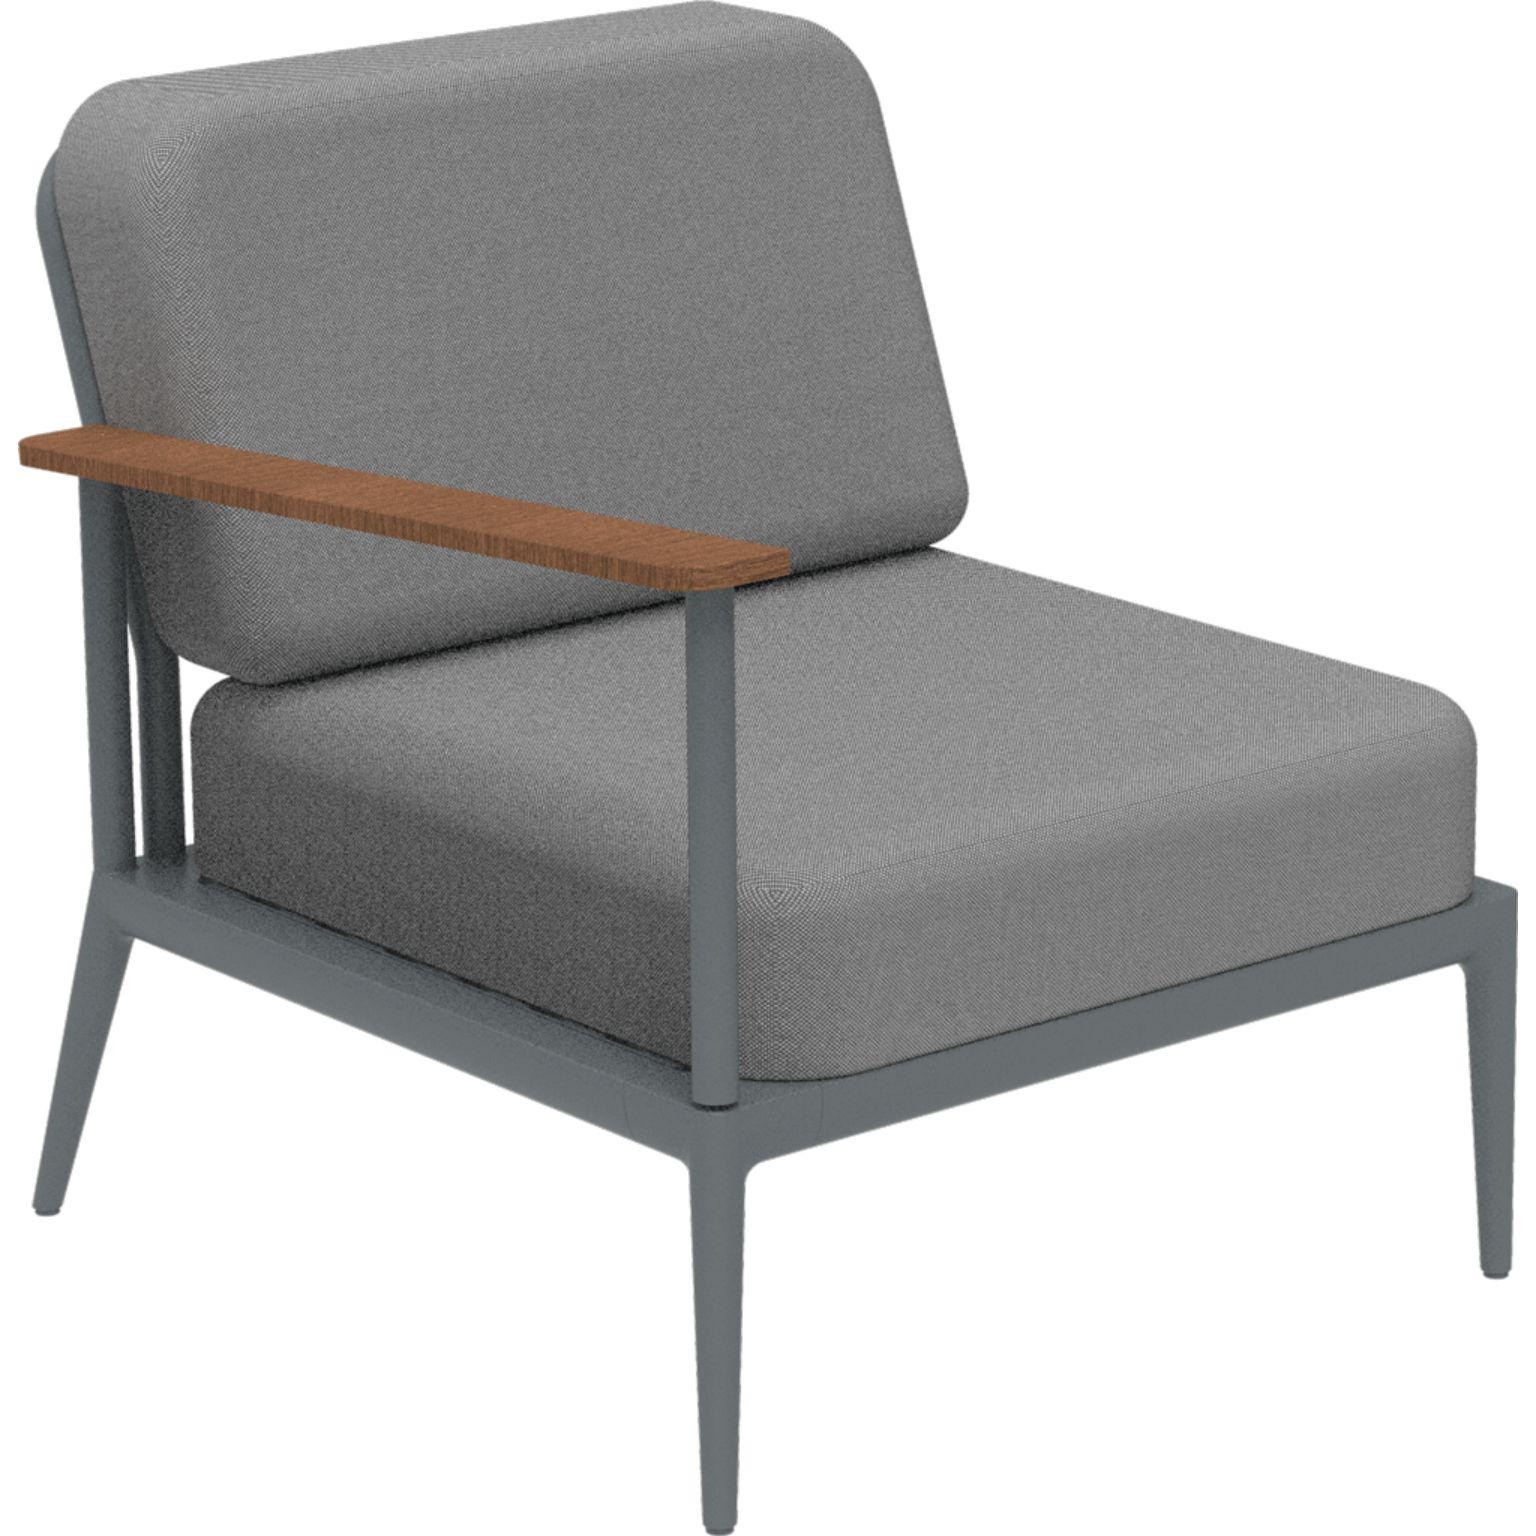 Nature Grey Rechtes modulares Sofa von MOWEE
Abmessungen: T85 x B76 x H81 cm (Sitzhöhe 42 cm).
MATERIAL: Aluminium, Polsterung und Iroko-Holz.
Gewicht: 19 kg.
Auch in verschiedenen Farben und Ausführungen erhältlich. 

Eine Collection'S, die durch